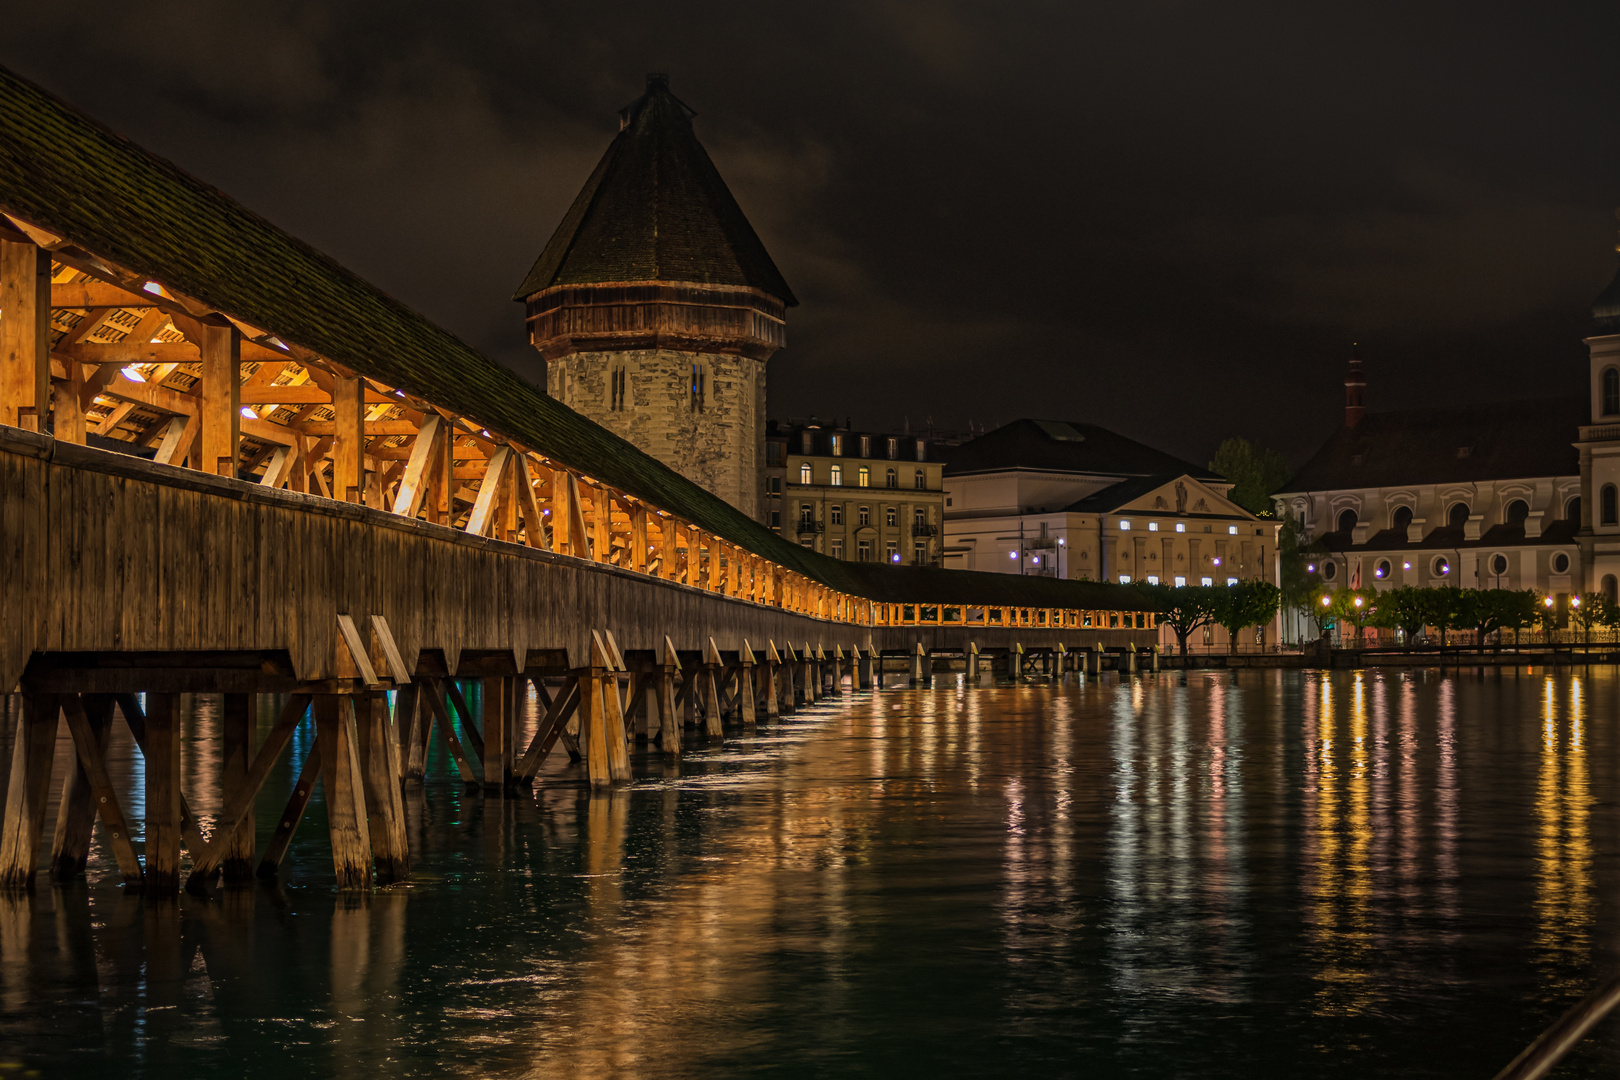 Luzern - Kappelbrücke